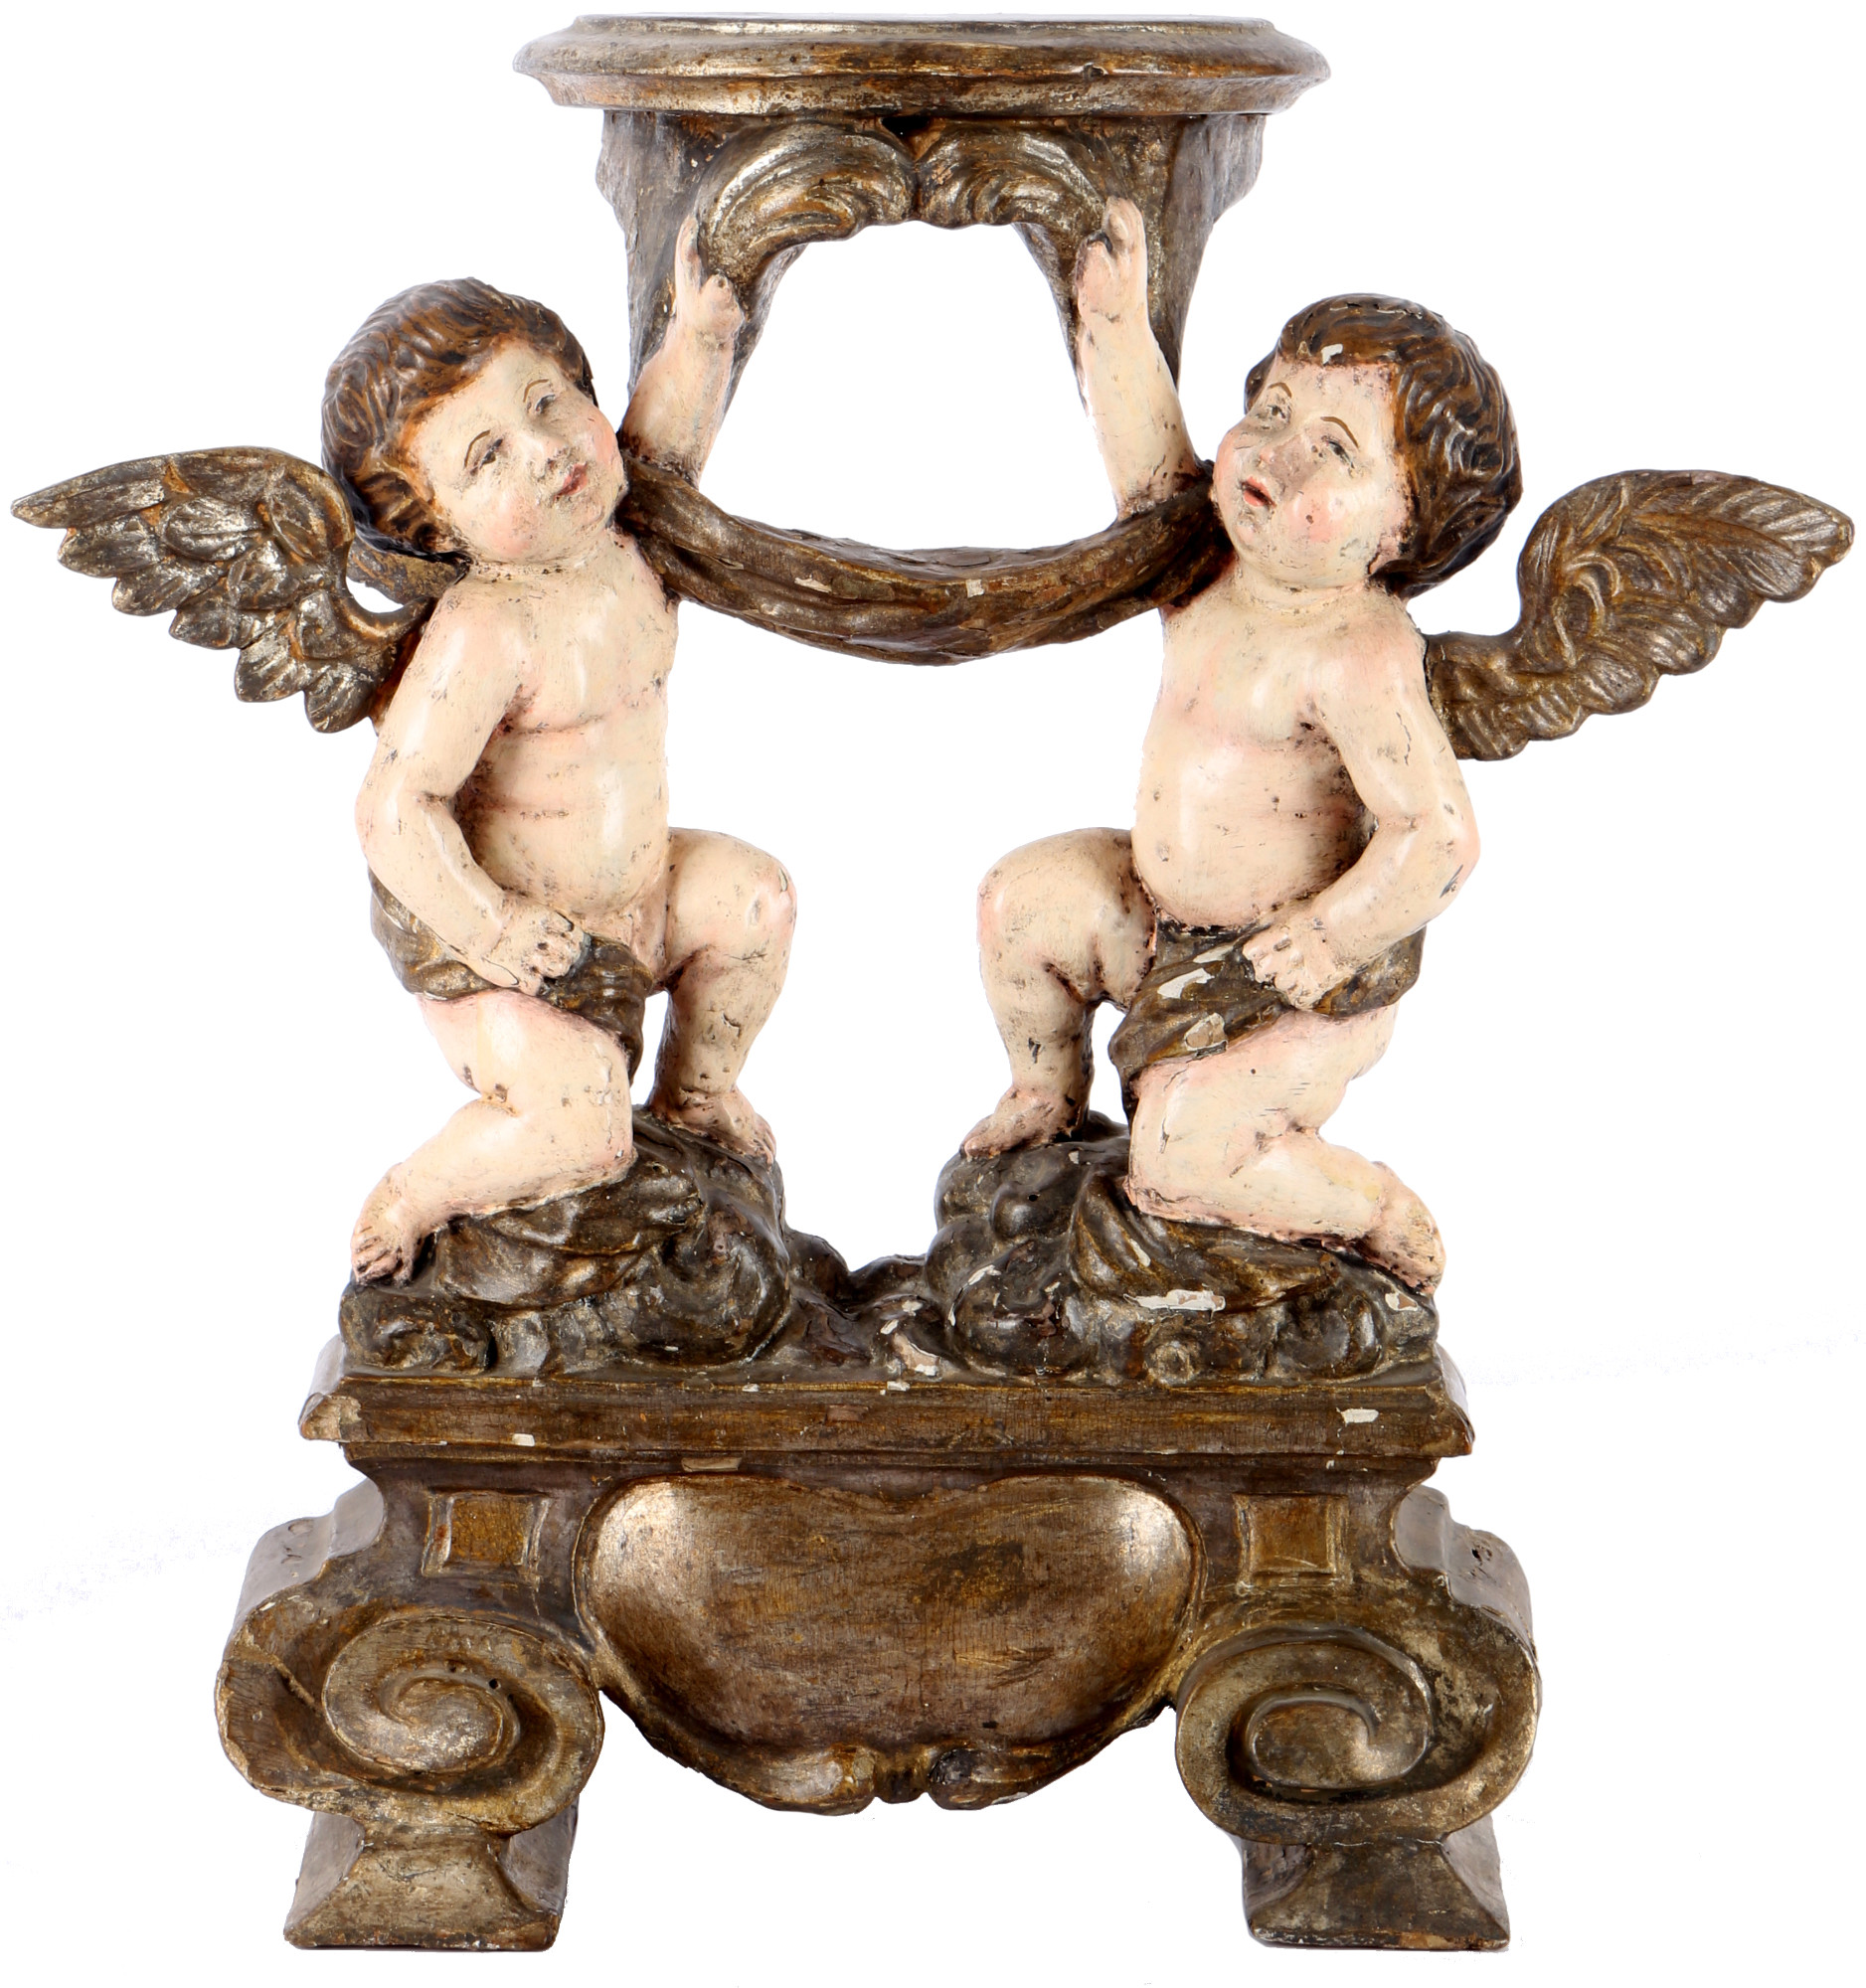 Baroque cherub pedestal 18th century, Barock Podest mit Puttenpaar 18. Jahrhundert,